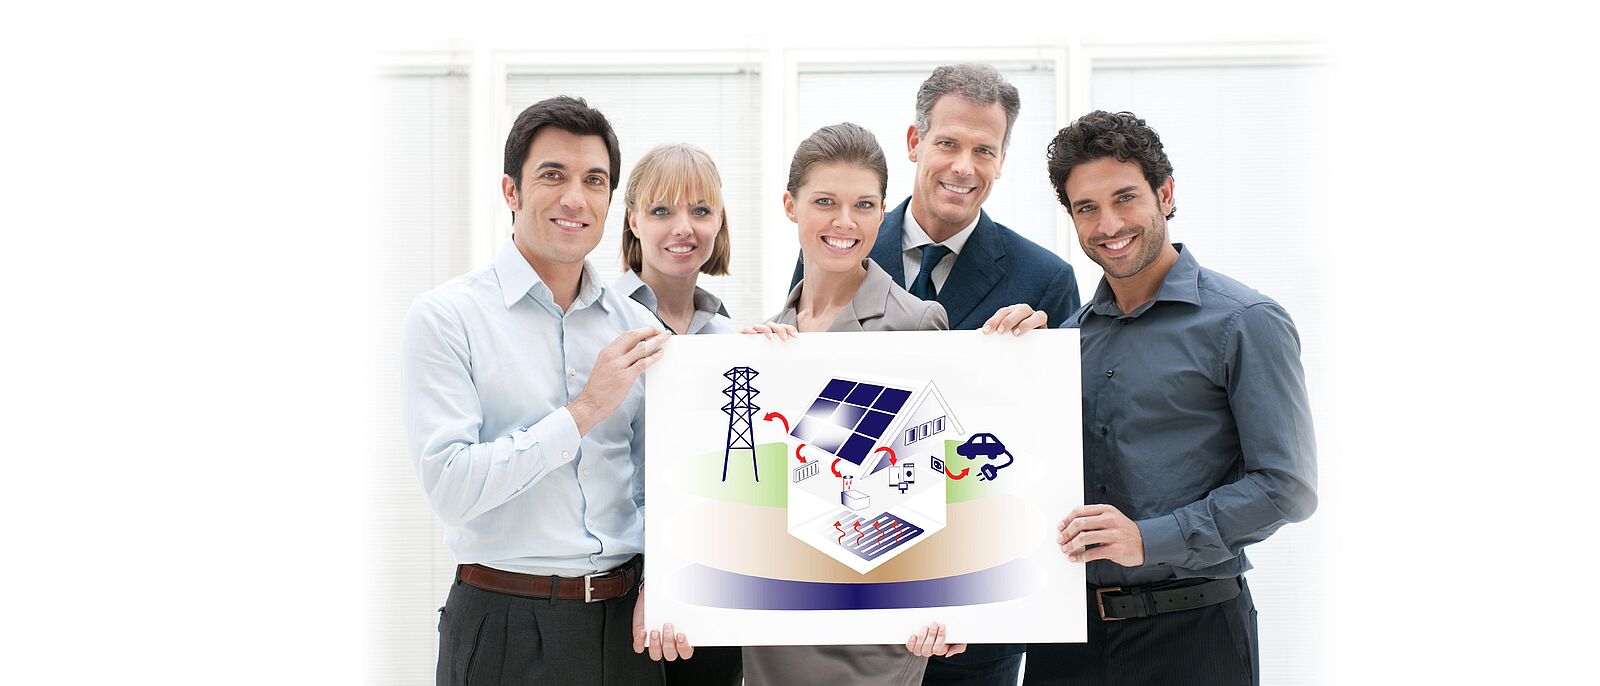 Eine Menschgruppe hält gemeinsam ein Schild hoch. Darauf ist eine Illustration von einem Haus mit Solardach und markierten Energie-Steuerelementen für das Haus, daneben ein Elektroauto und ein Strommast.